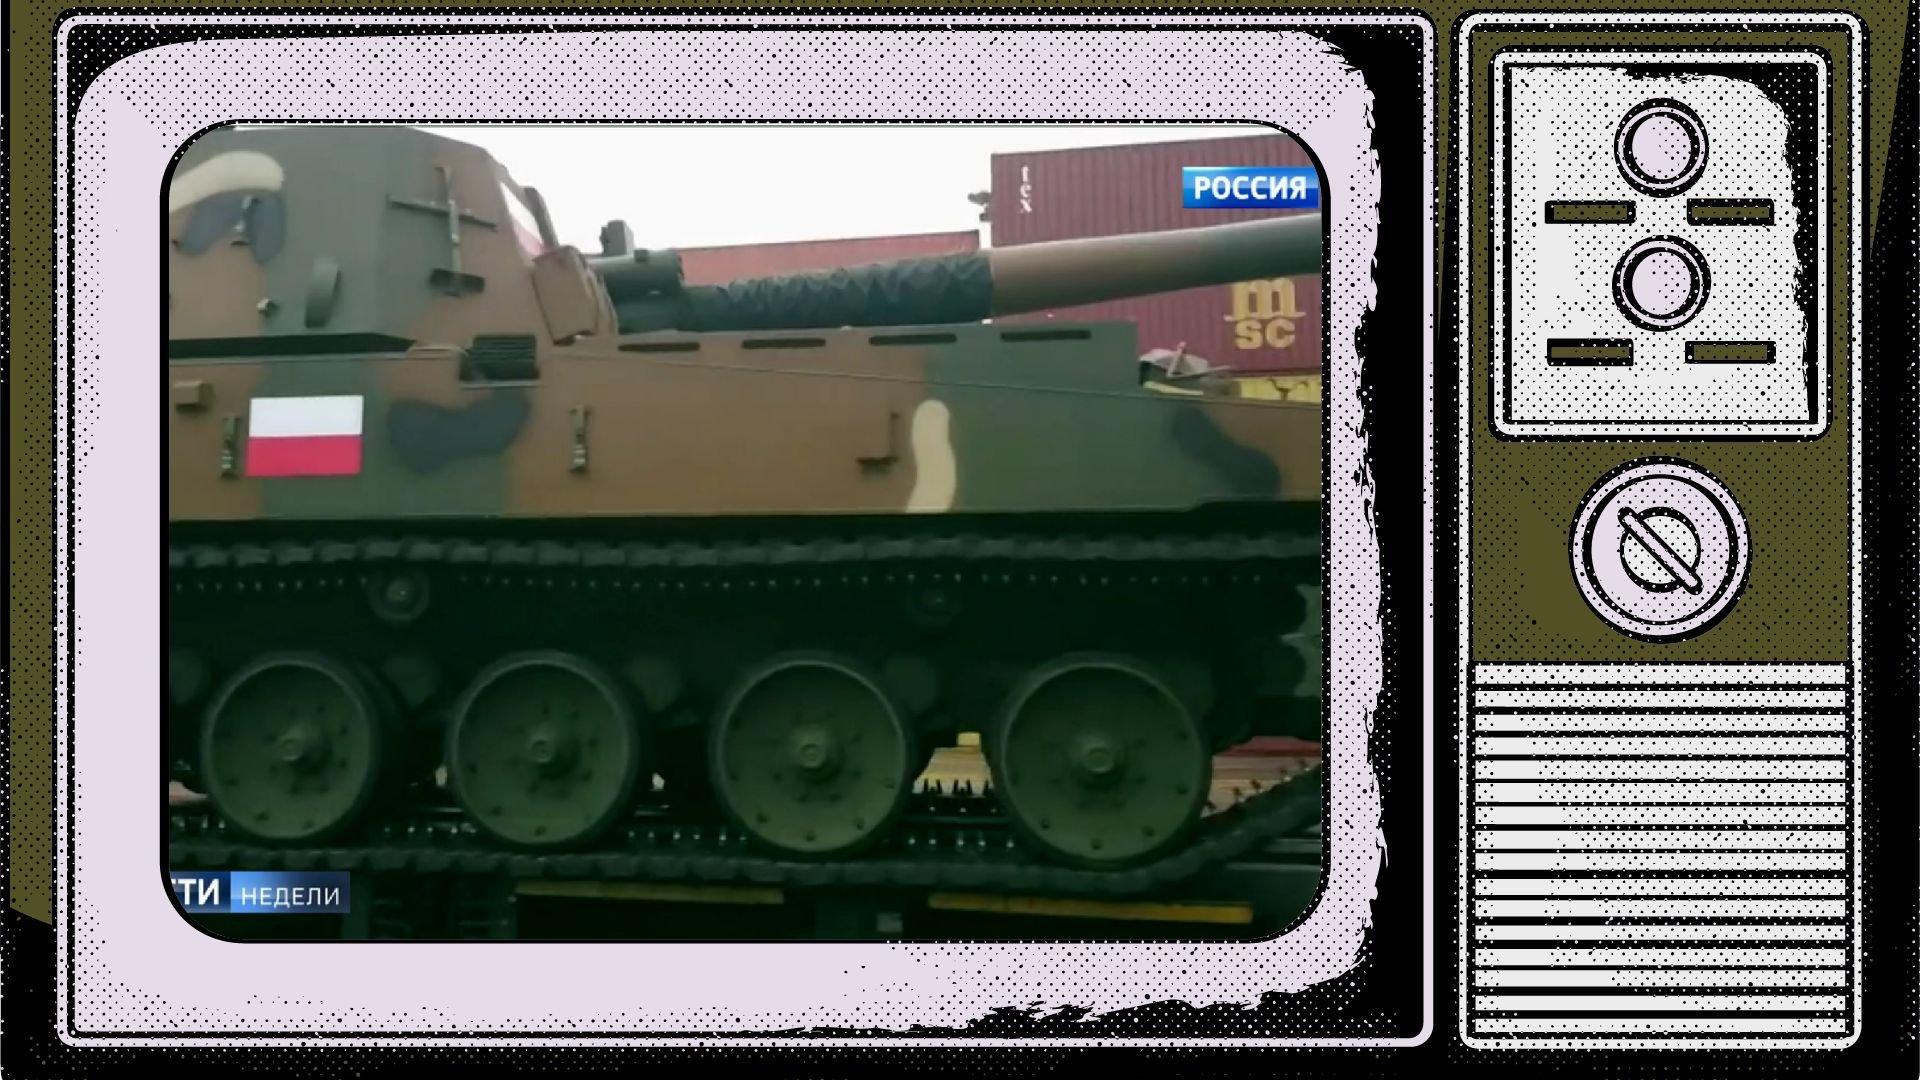 Grafika: w ekran starego telewizora wklejąne zdjęcie pojazdu wojskowego z biało-czerwoną flagą